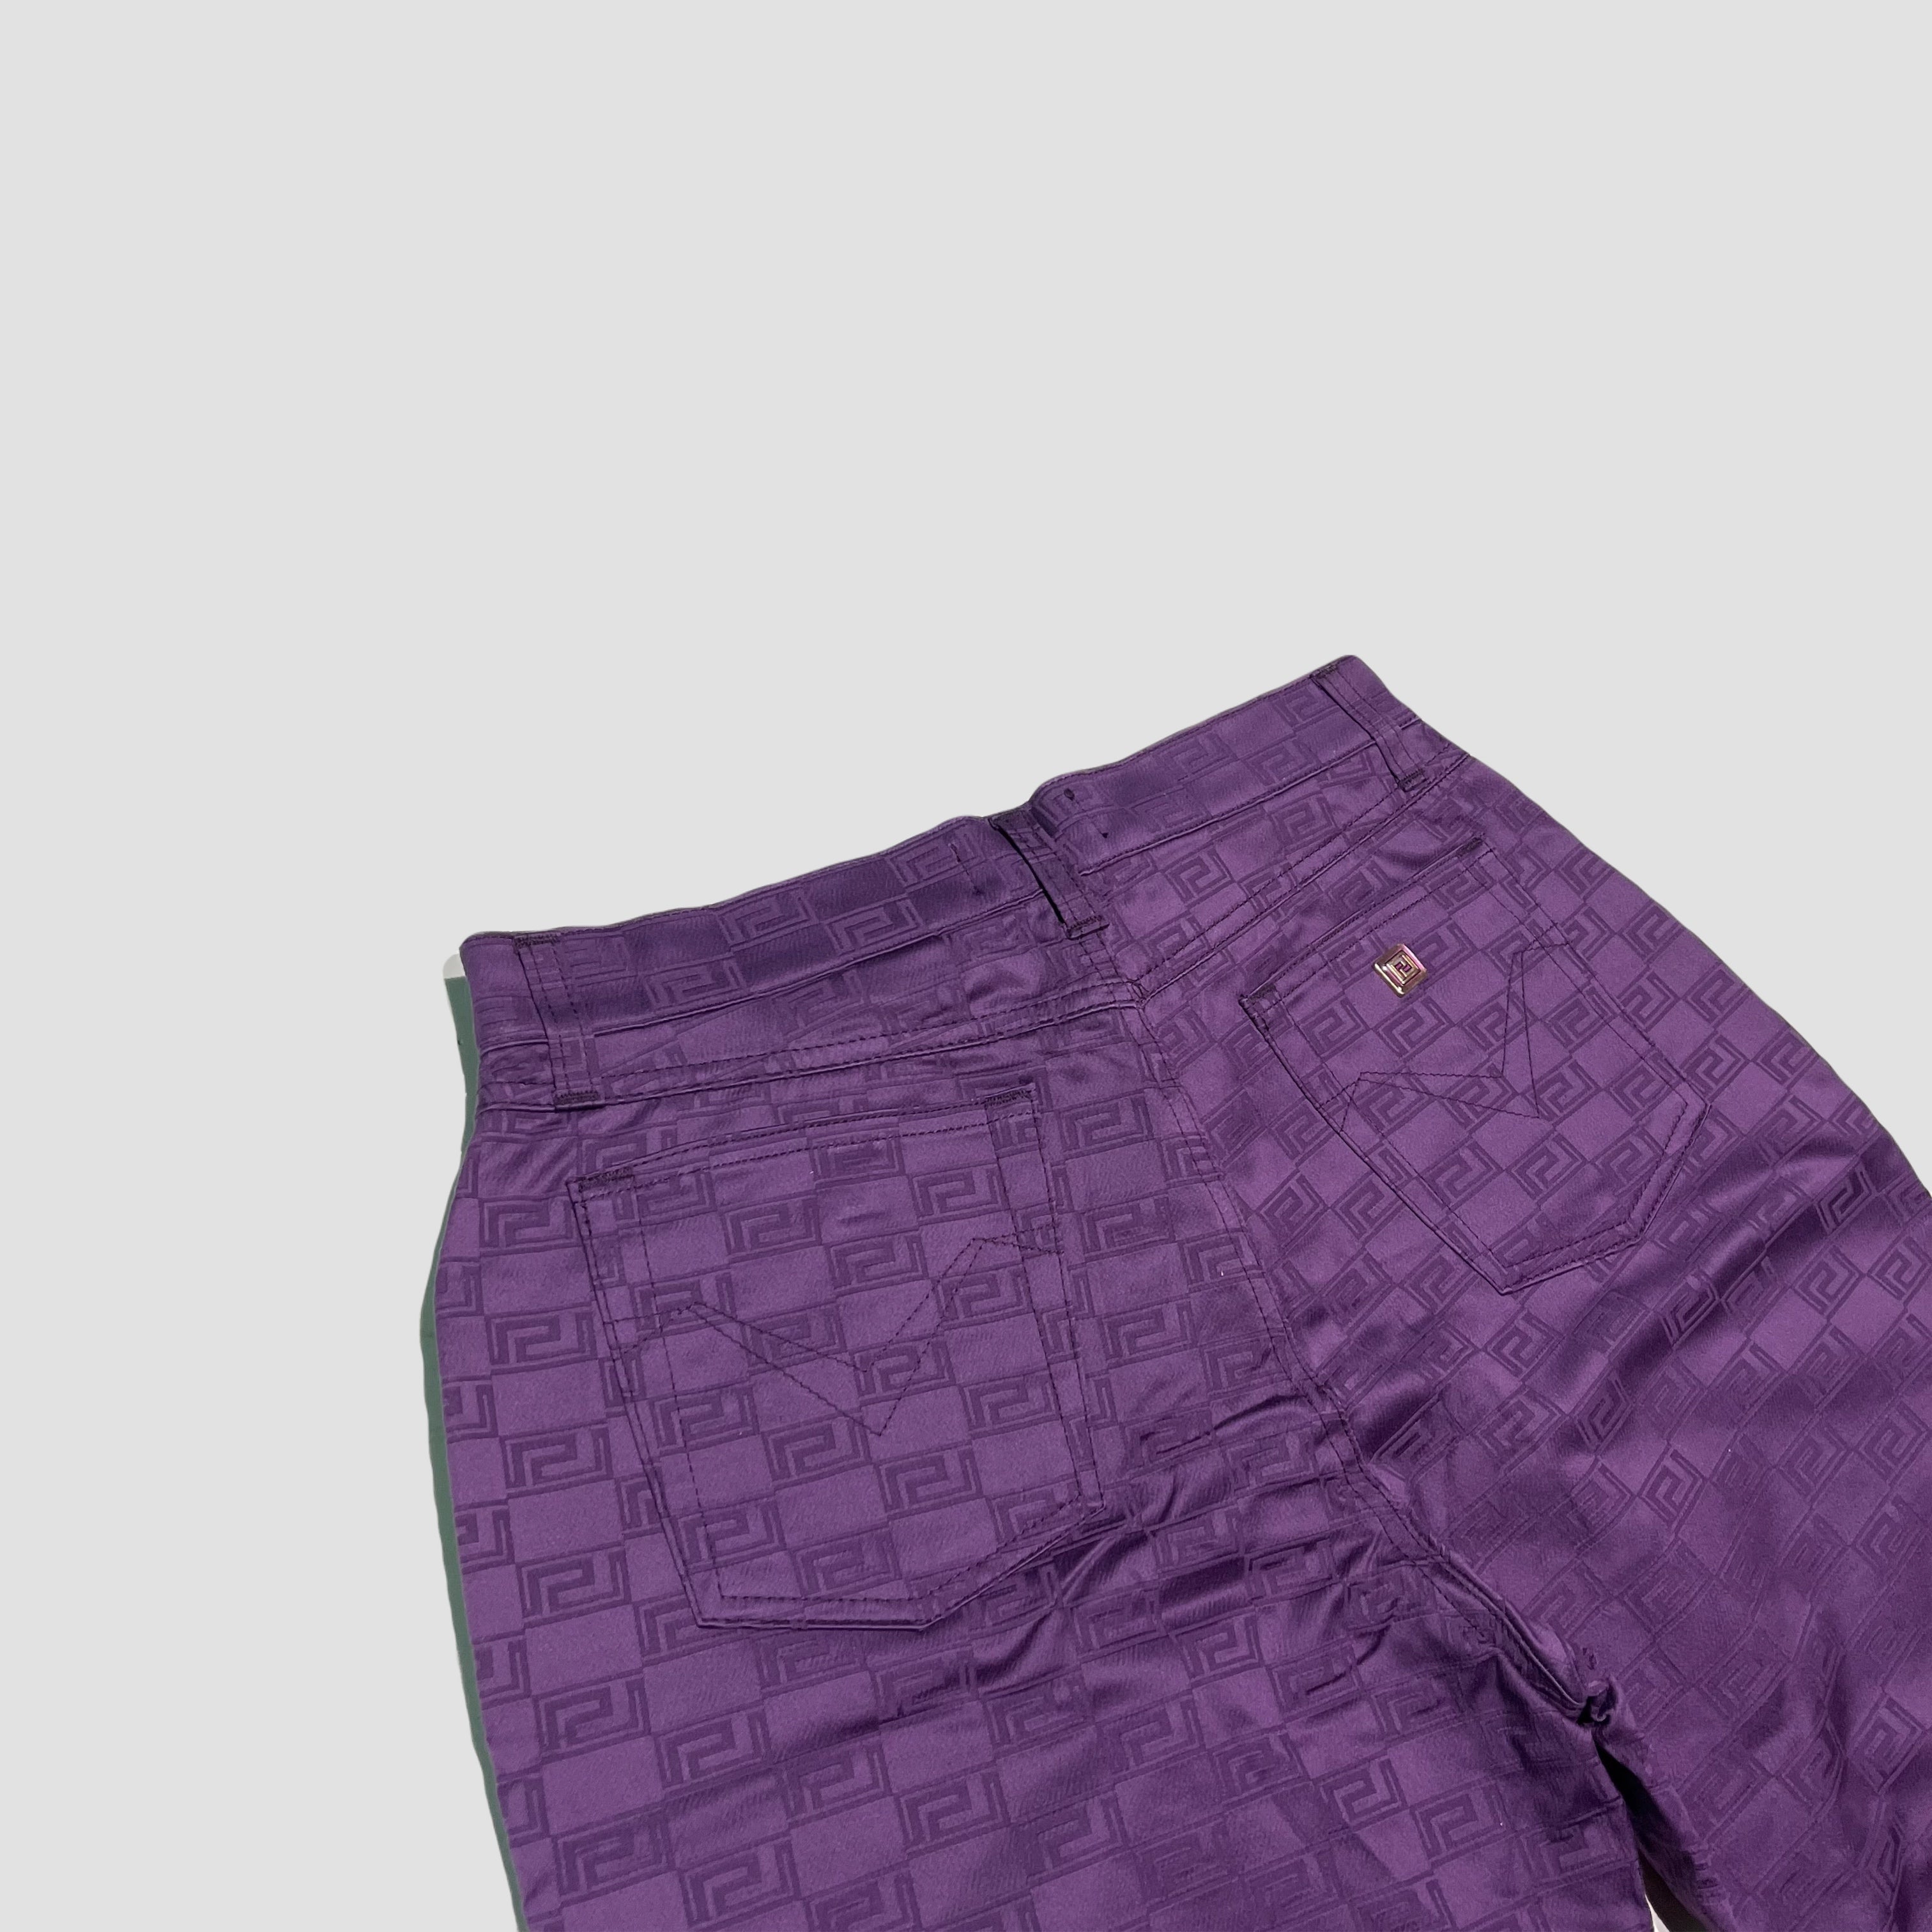 Gianni Versace 90’s Monogram Trousers Original Allure